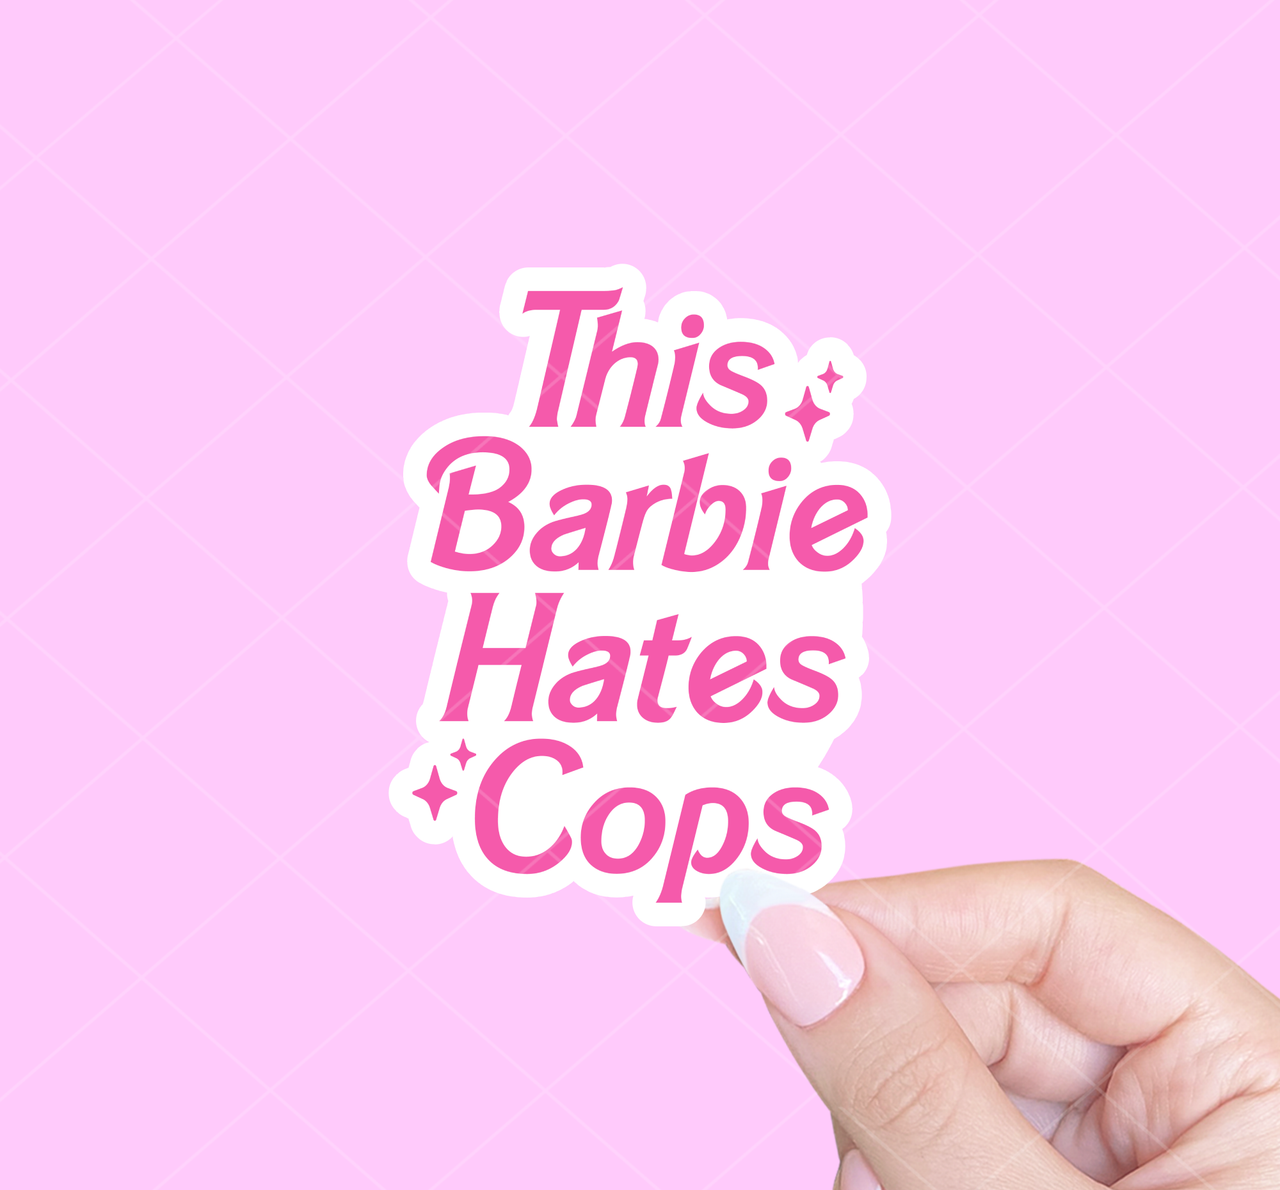 This Barbie hates cops